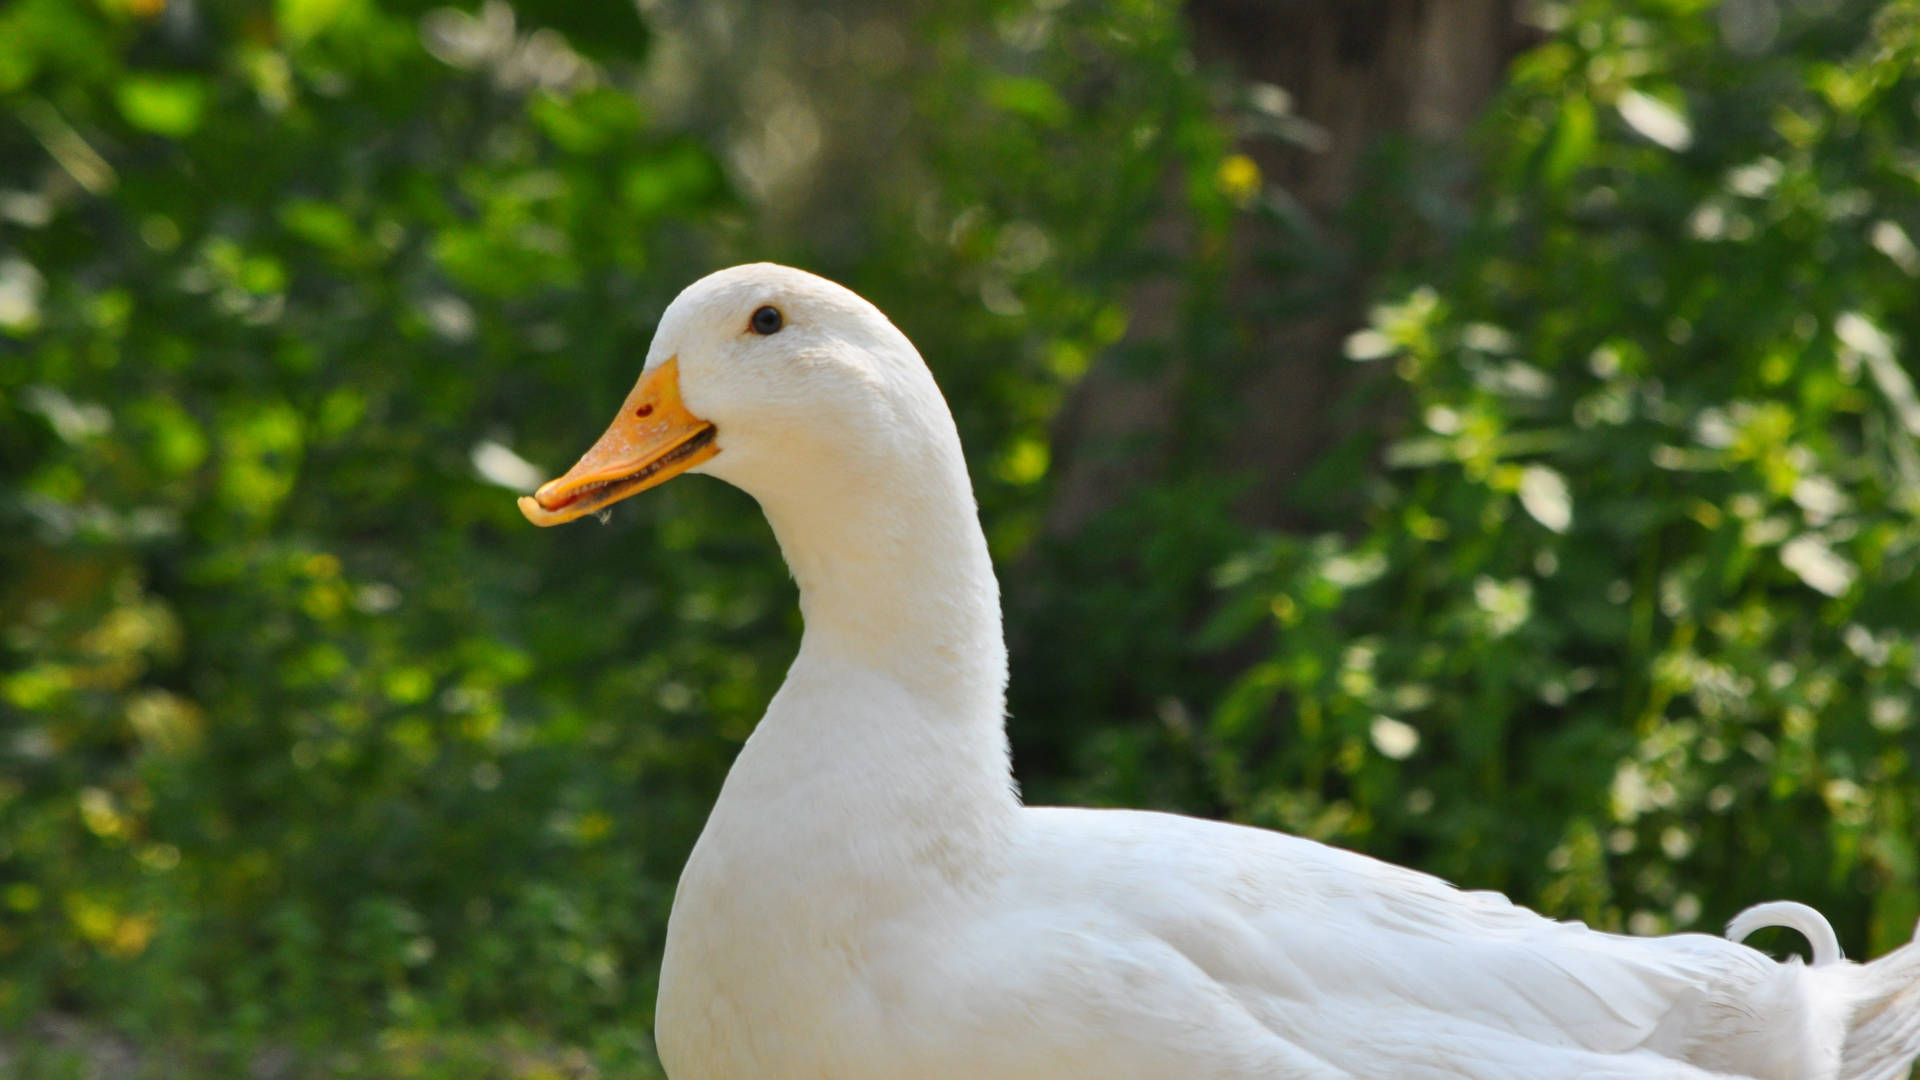 White Duck In Focus Background